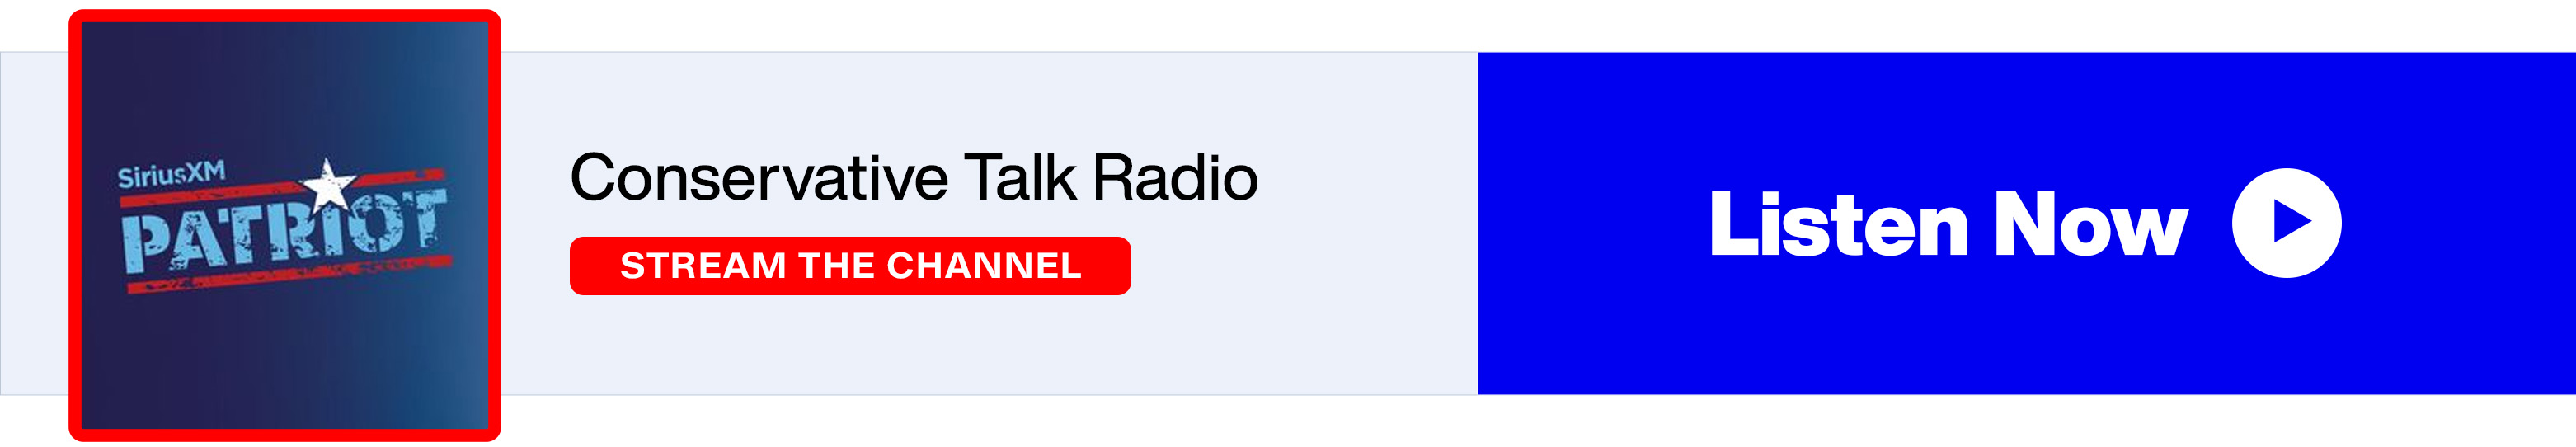 SiriusXM Patriot - Conservative Talk Radio - Listen Now banner